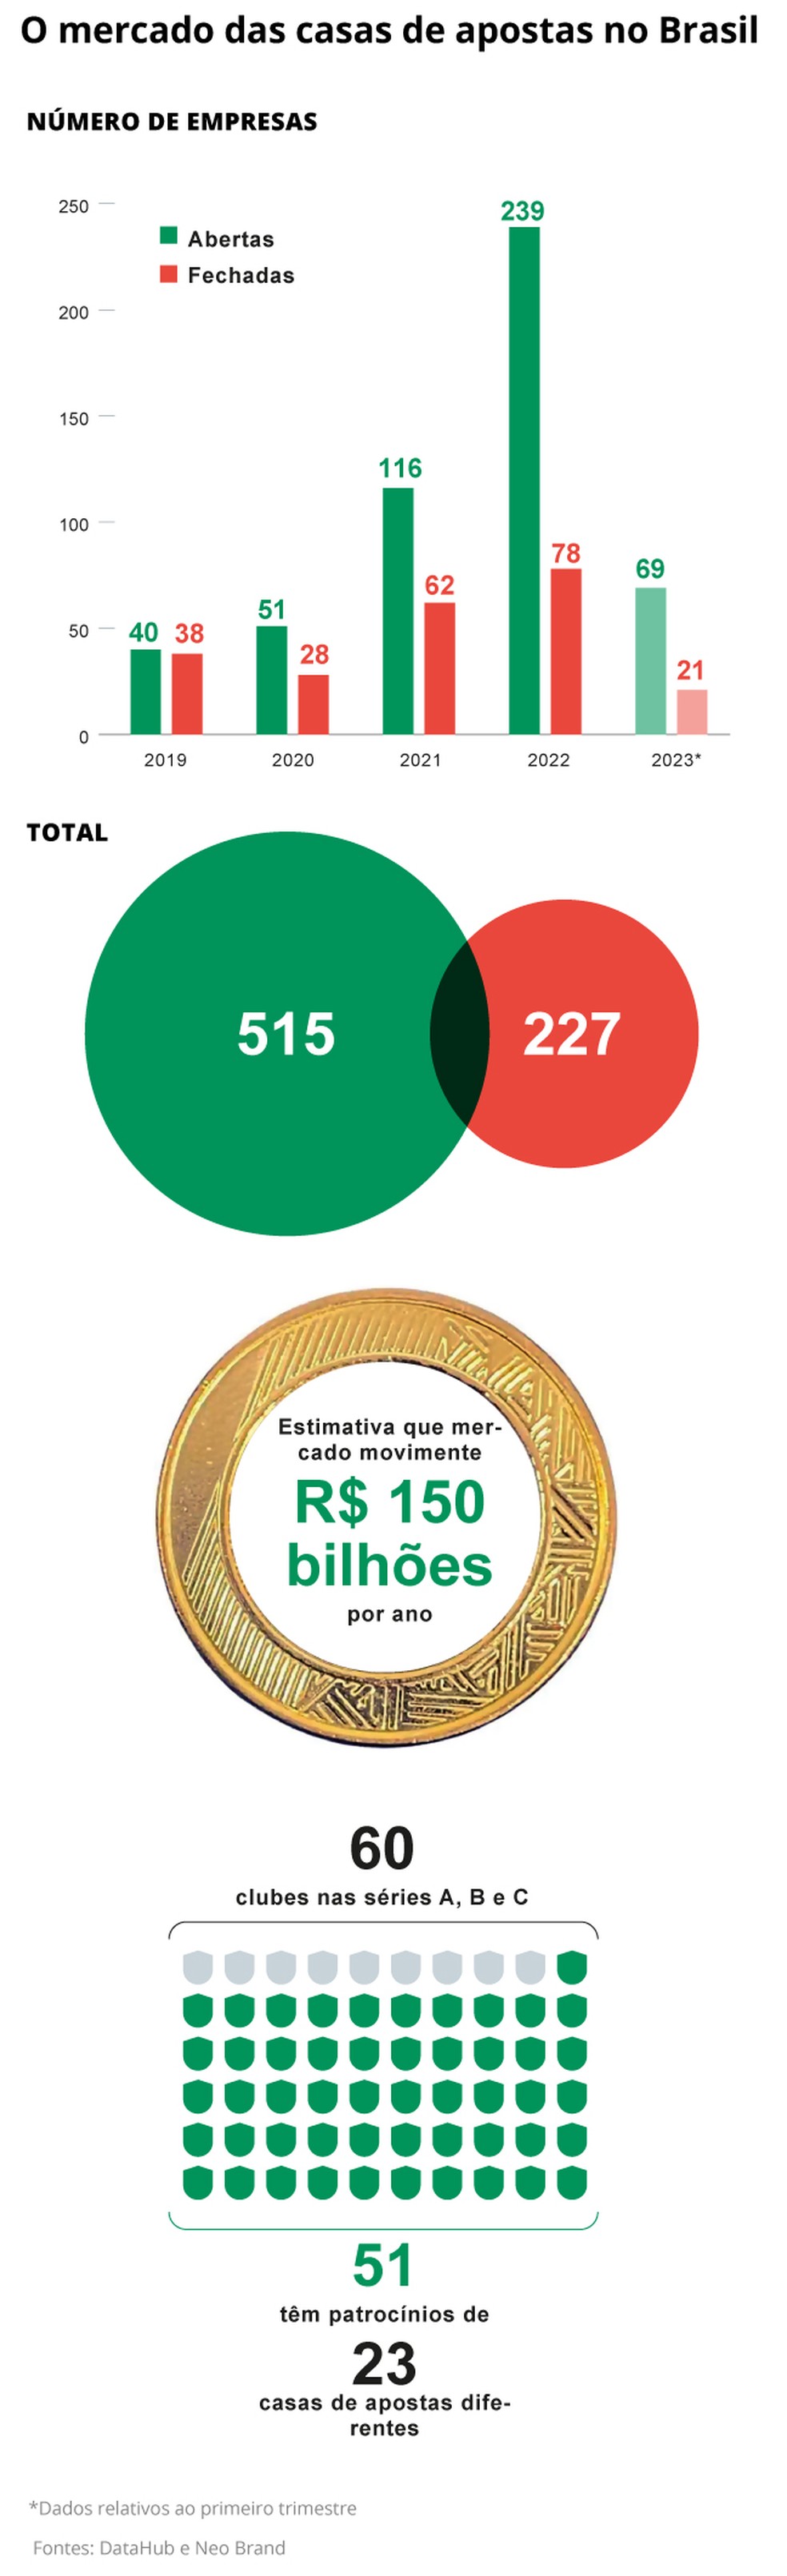 Brasil já emitiu mais de 500 licenças para sites de apostas